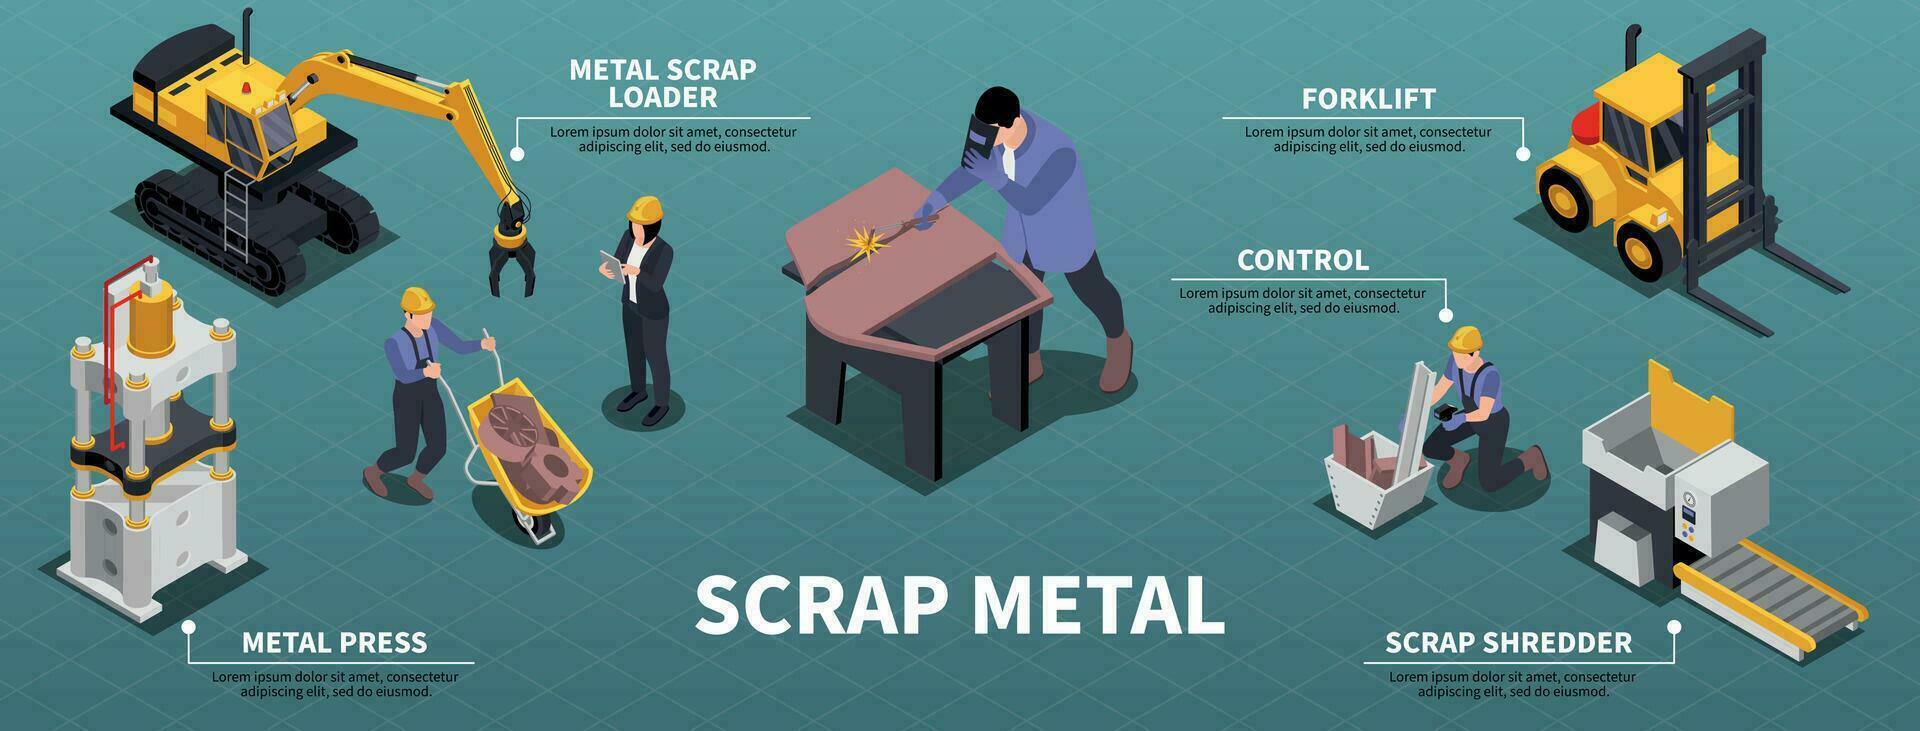 Scrap Metal Infographic Set vector